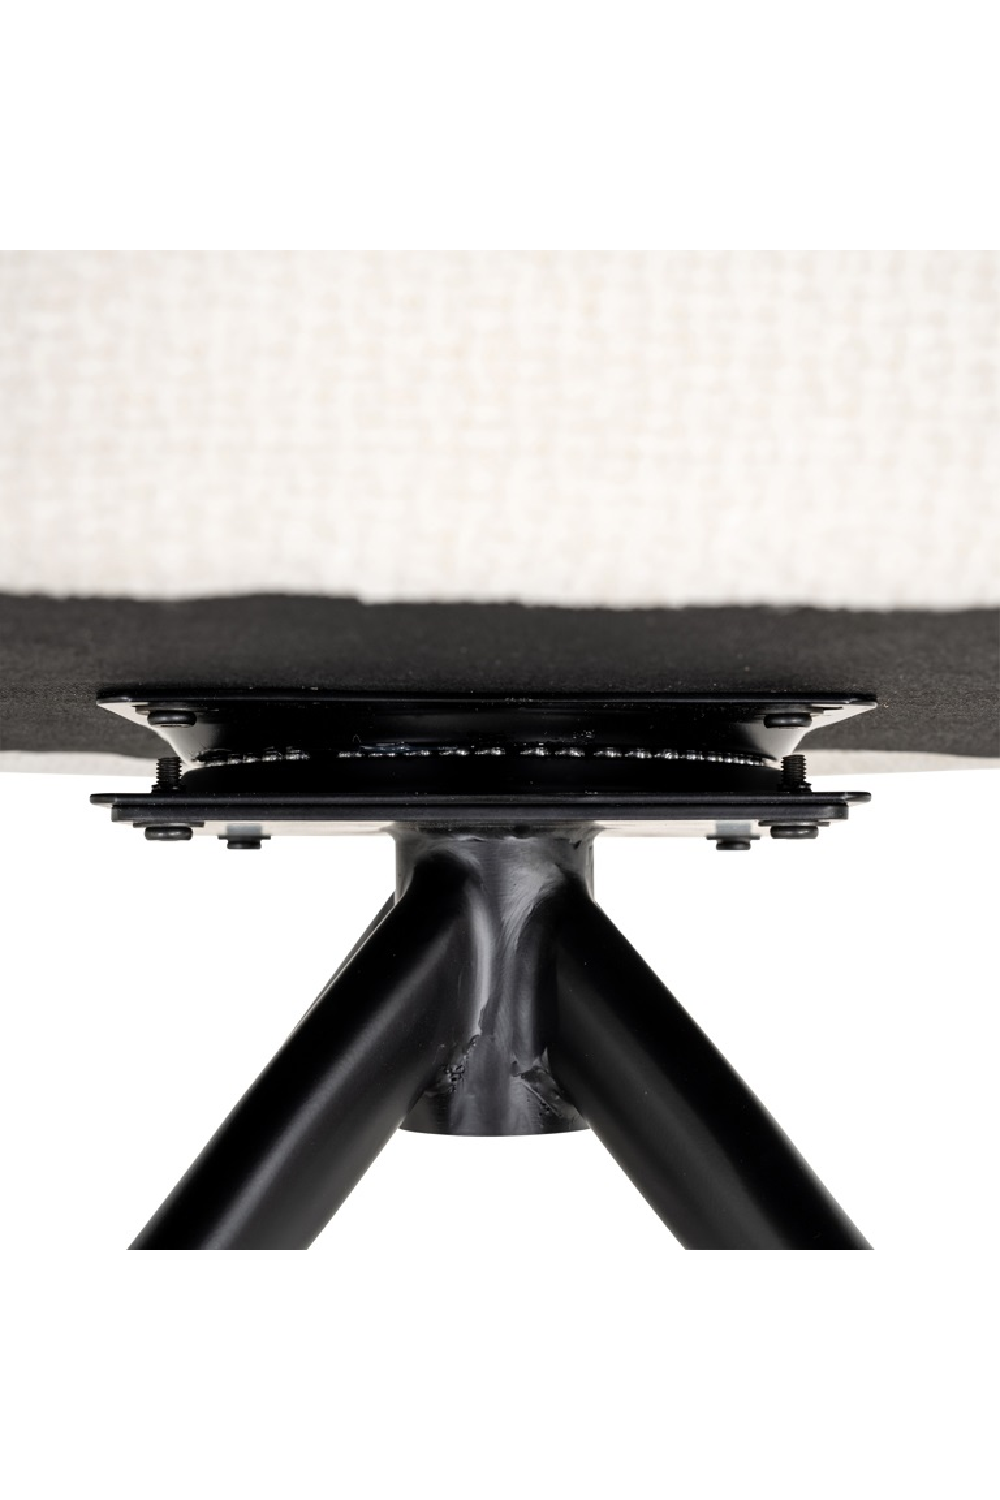 White Swivel Chair | OROA Benthe | Oroa.com